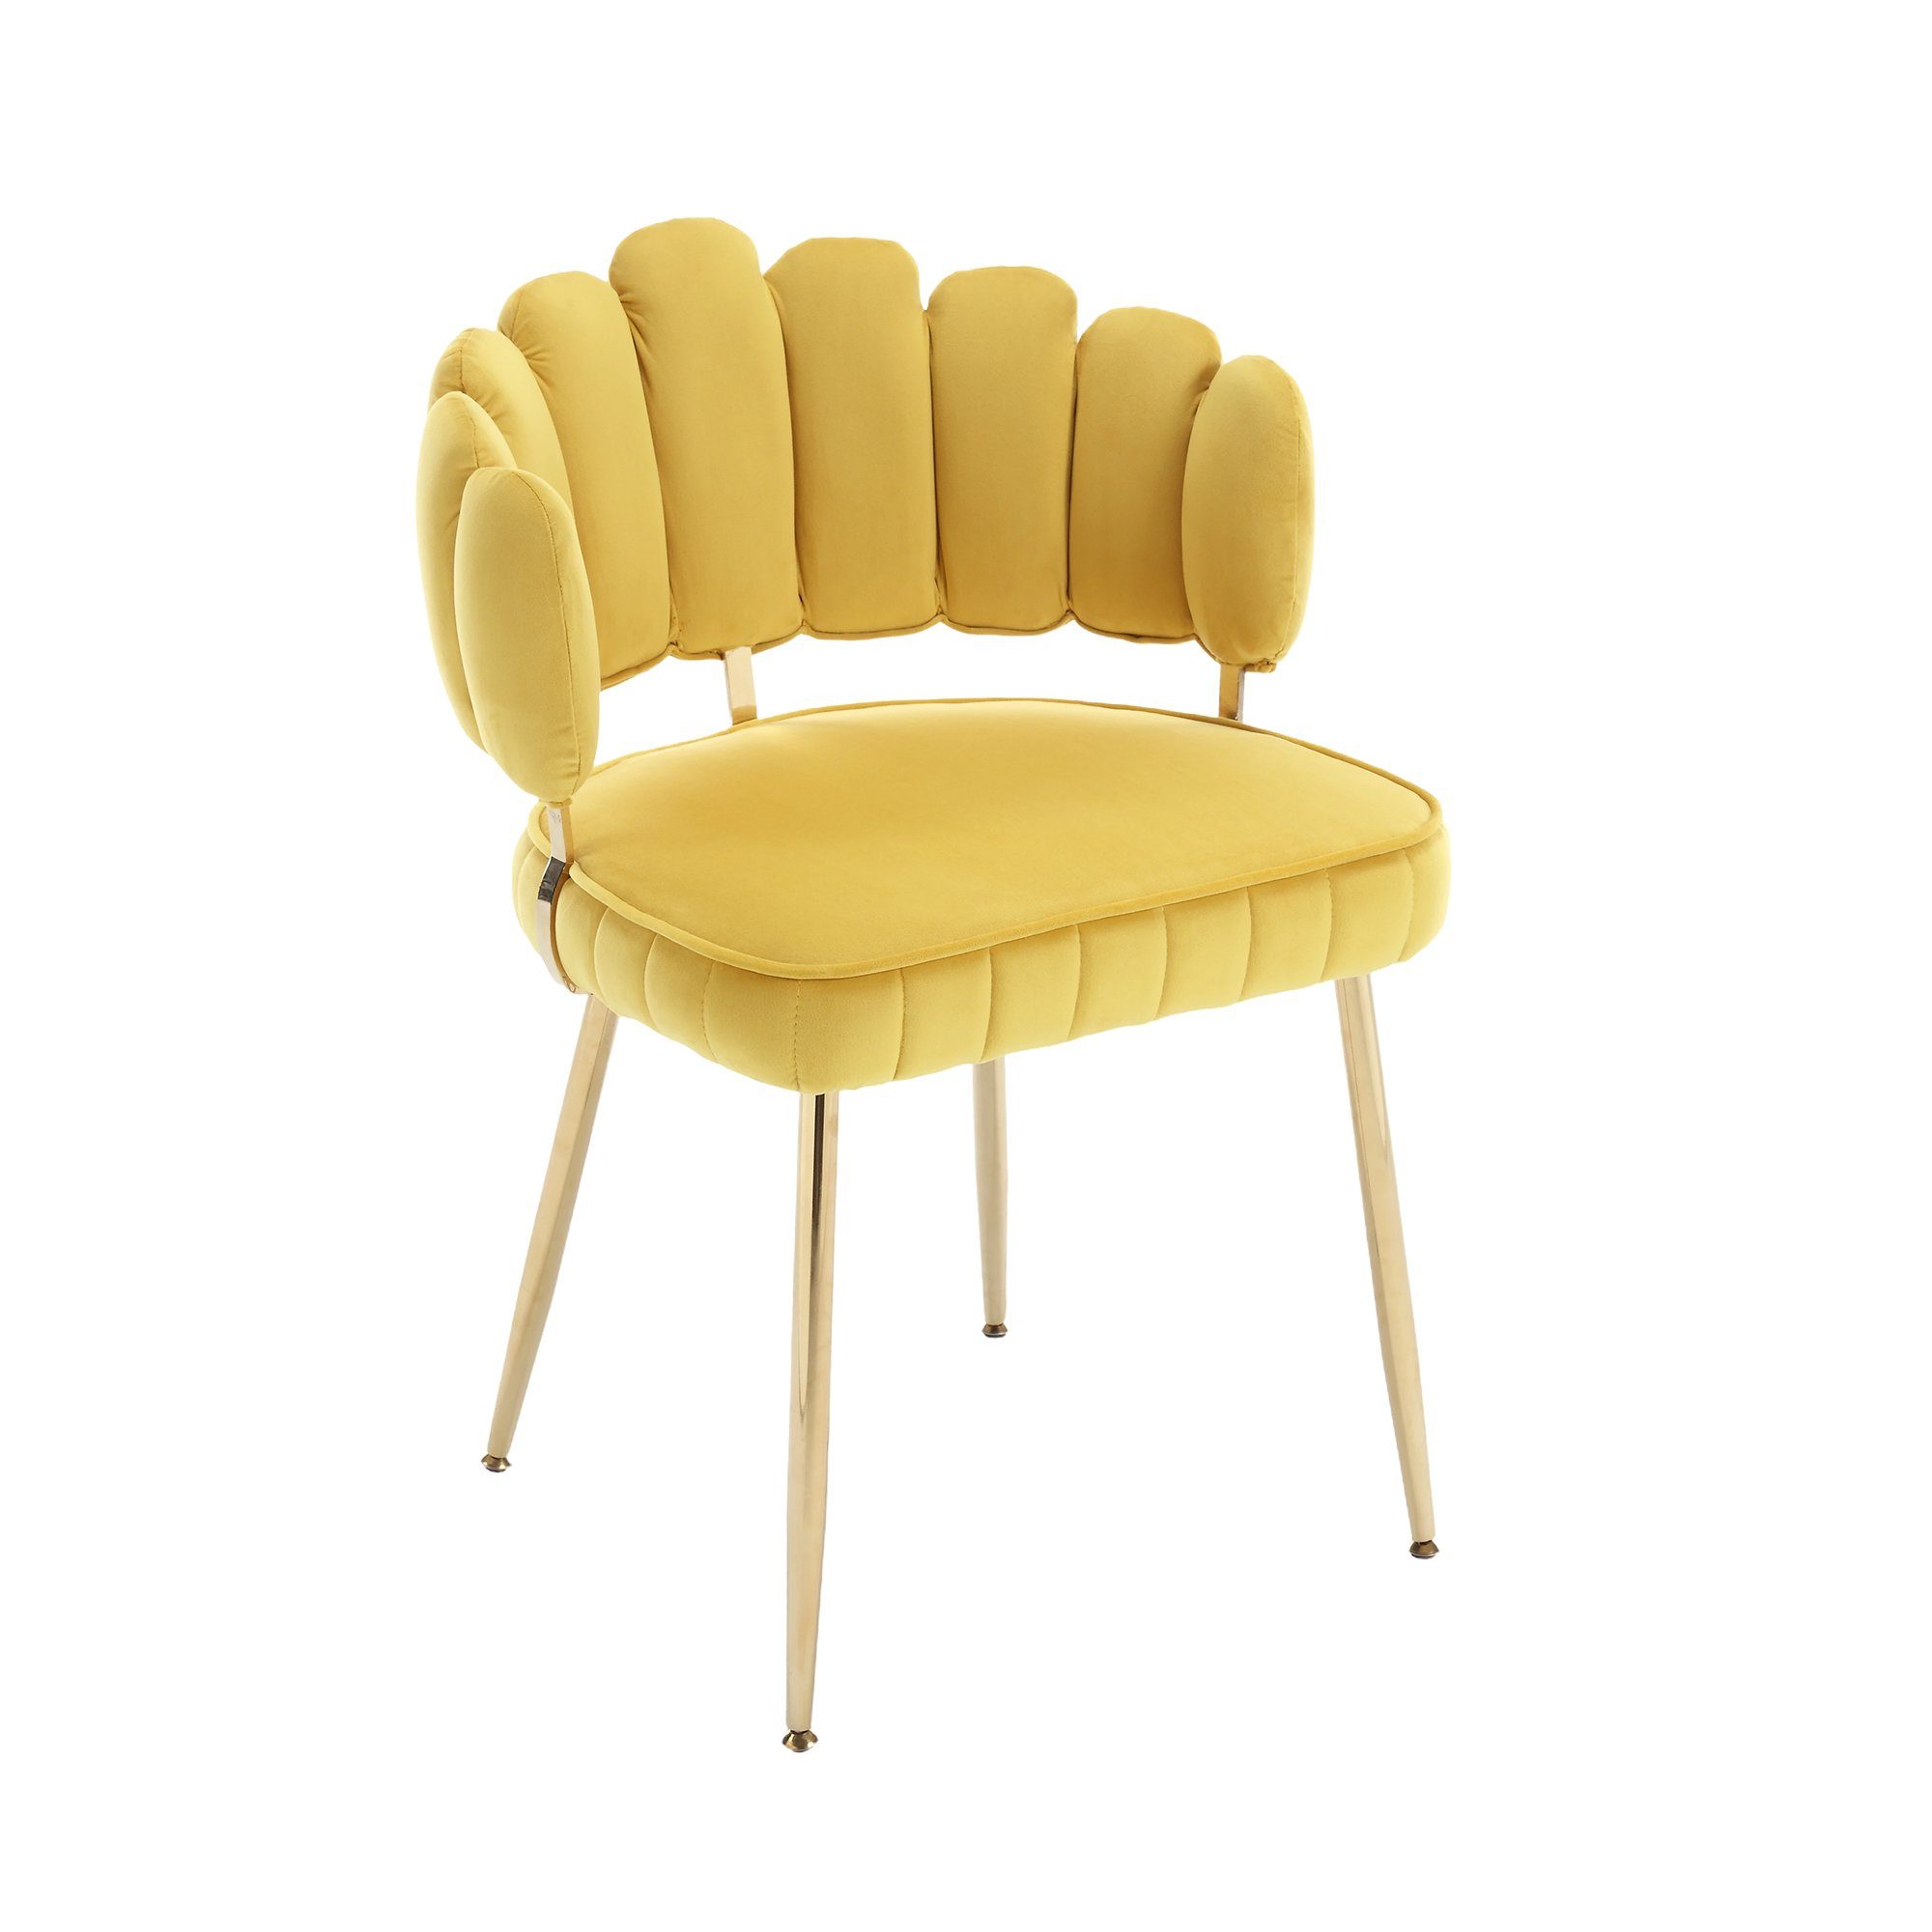 DOTMALL Stuhl Akzentstuhl, bequemer Einzelstuhl mit goldenen Füßen